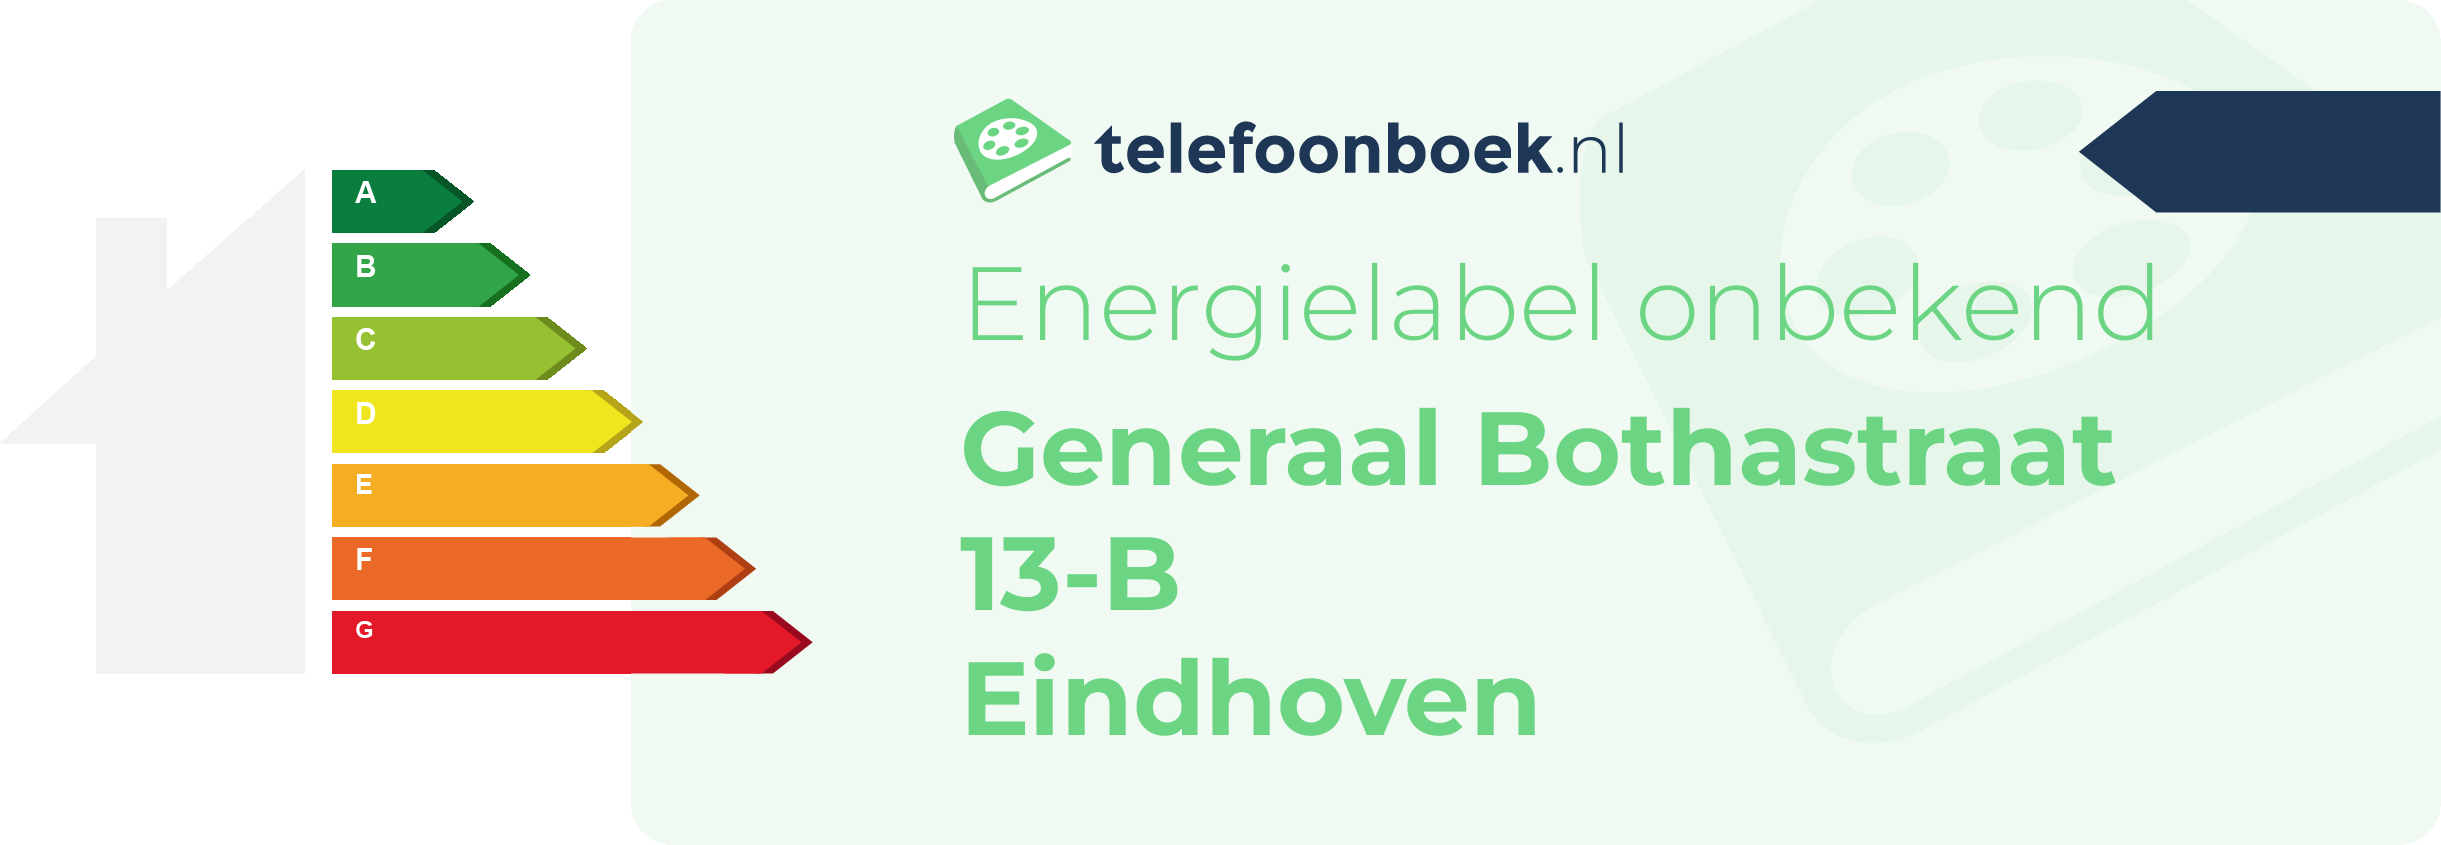 Energielabel Generaal Bothastraat 13-B Eindhoven